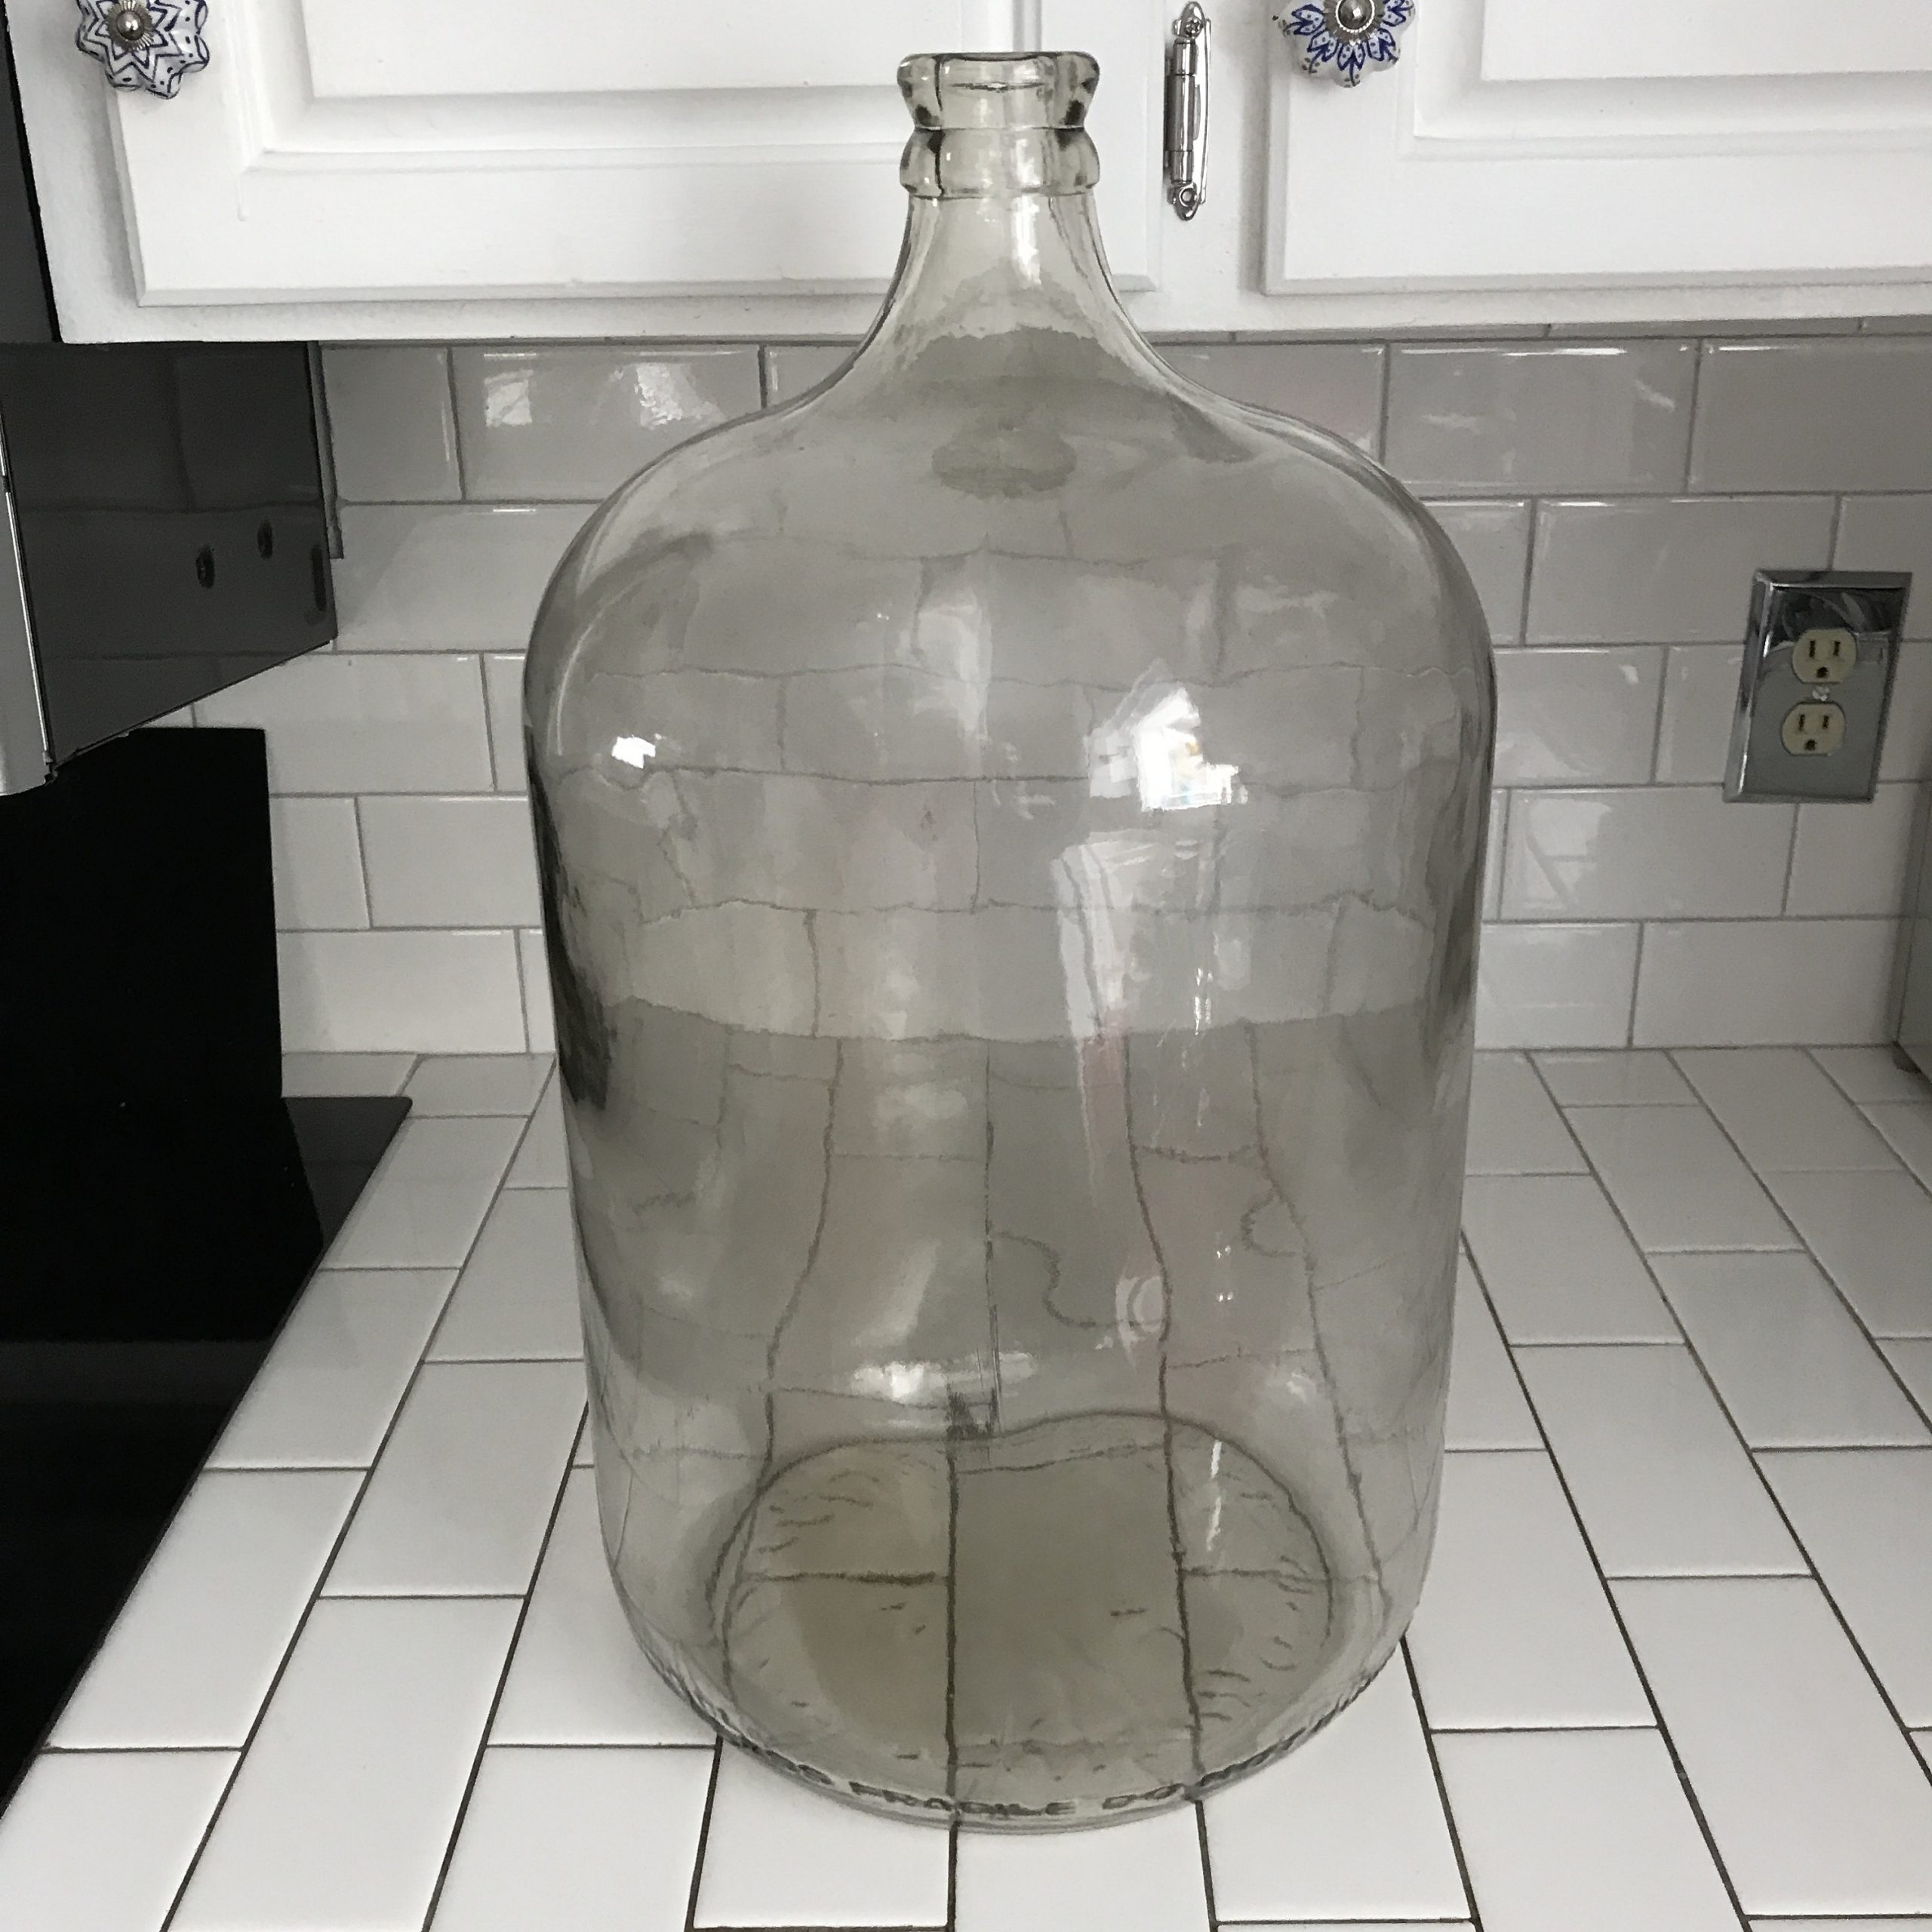 Retro 5 Gallon Glass Water Jug